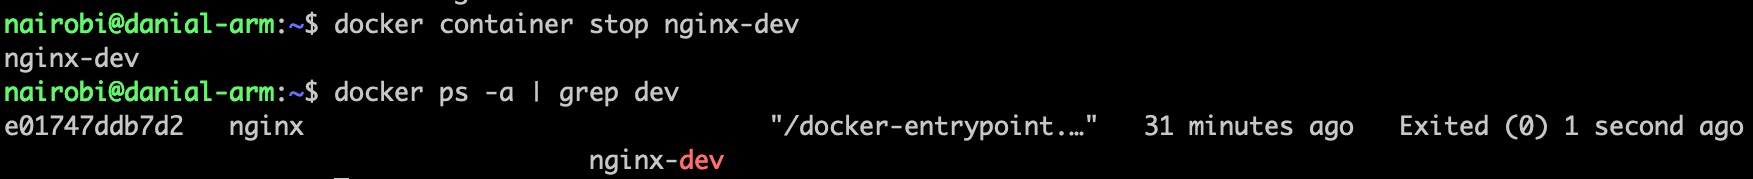 Docker Stop Container